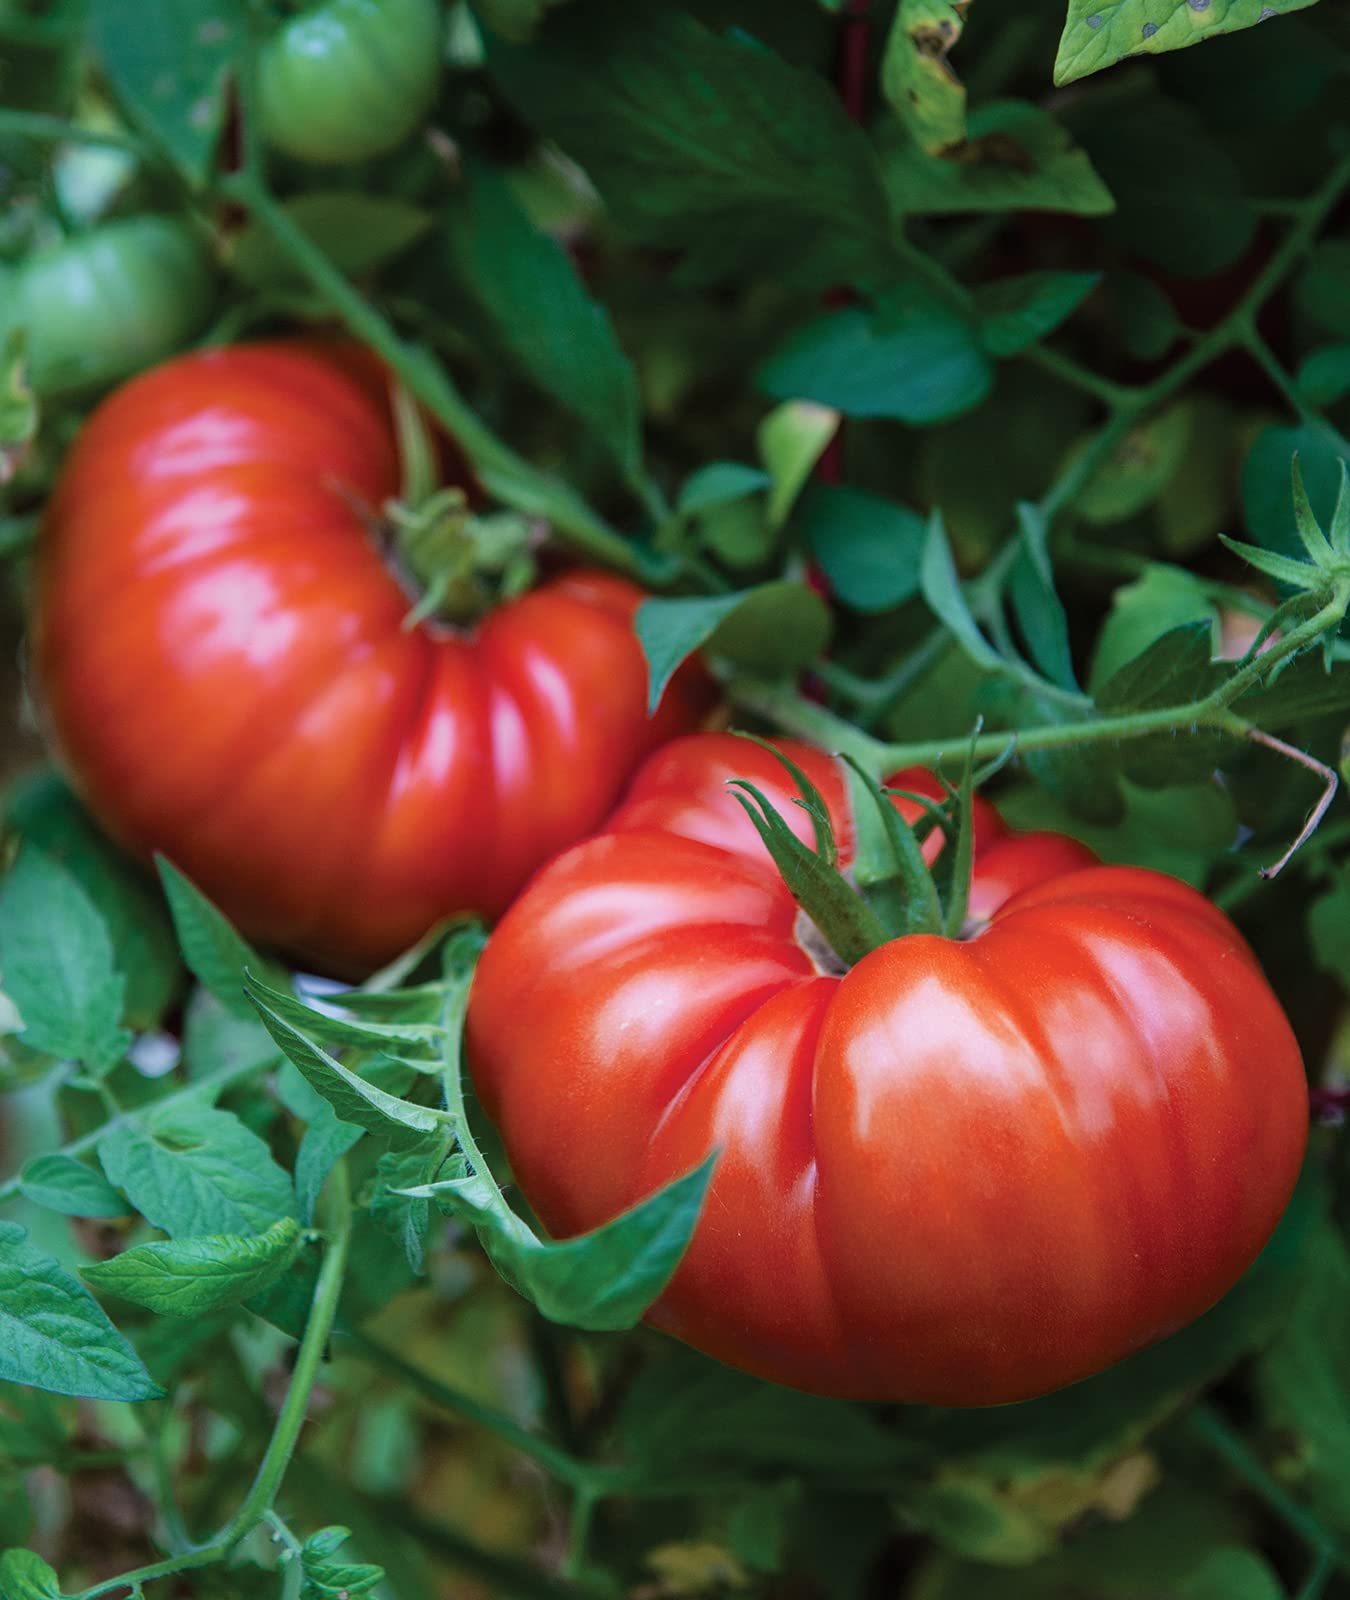 Burpee SteakHouse Hybrid Non-GMO Large Beefsteak Garden Produces Giant 3 LB Fresh Tomato Seeds